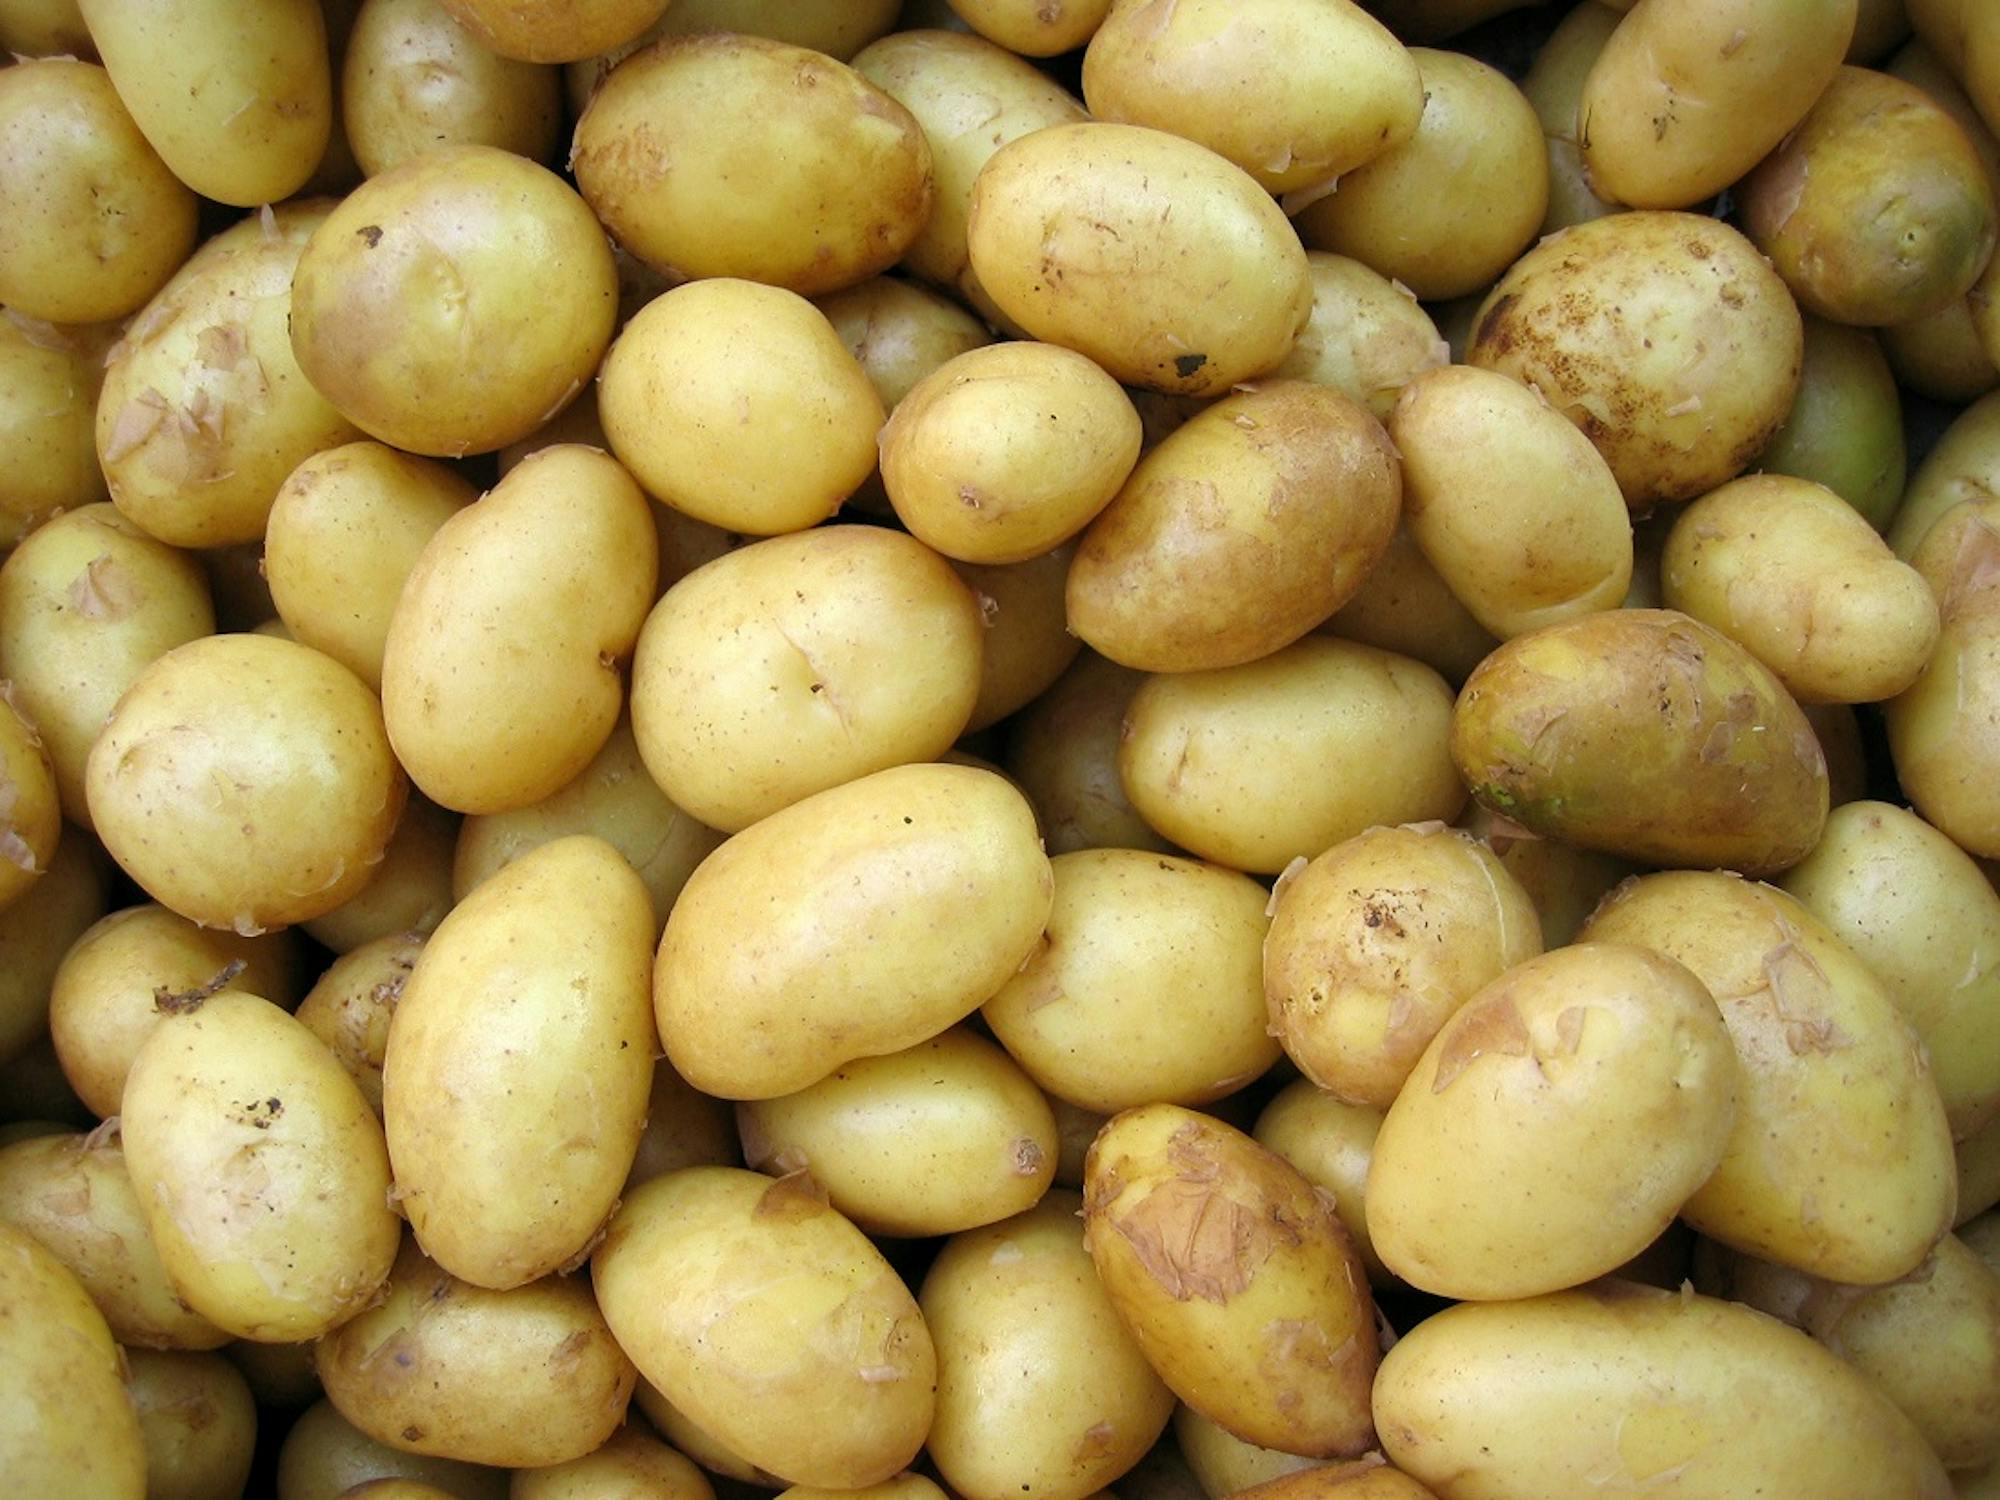 Liczne ziemniaki leżą zebrane na stosie.